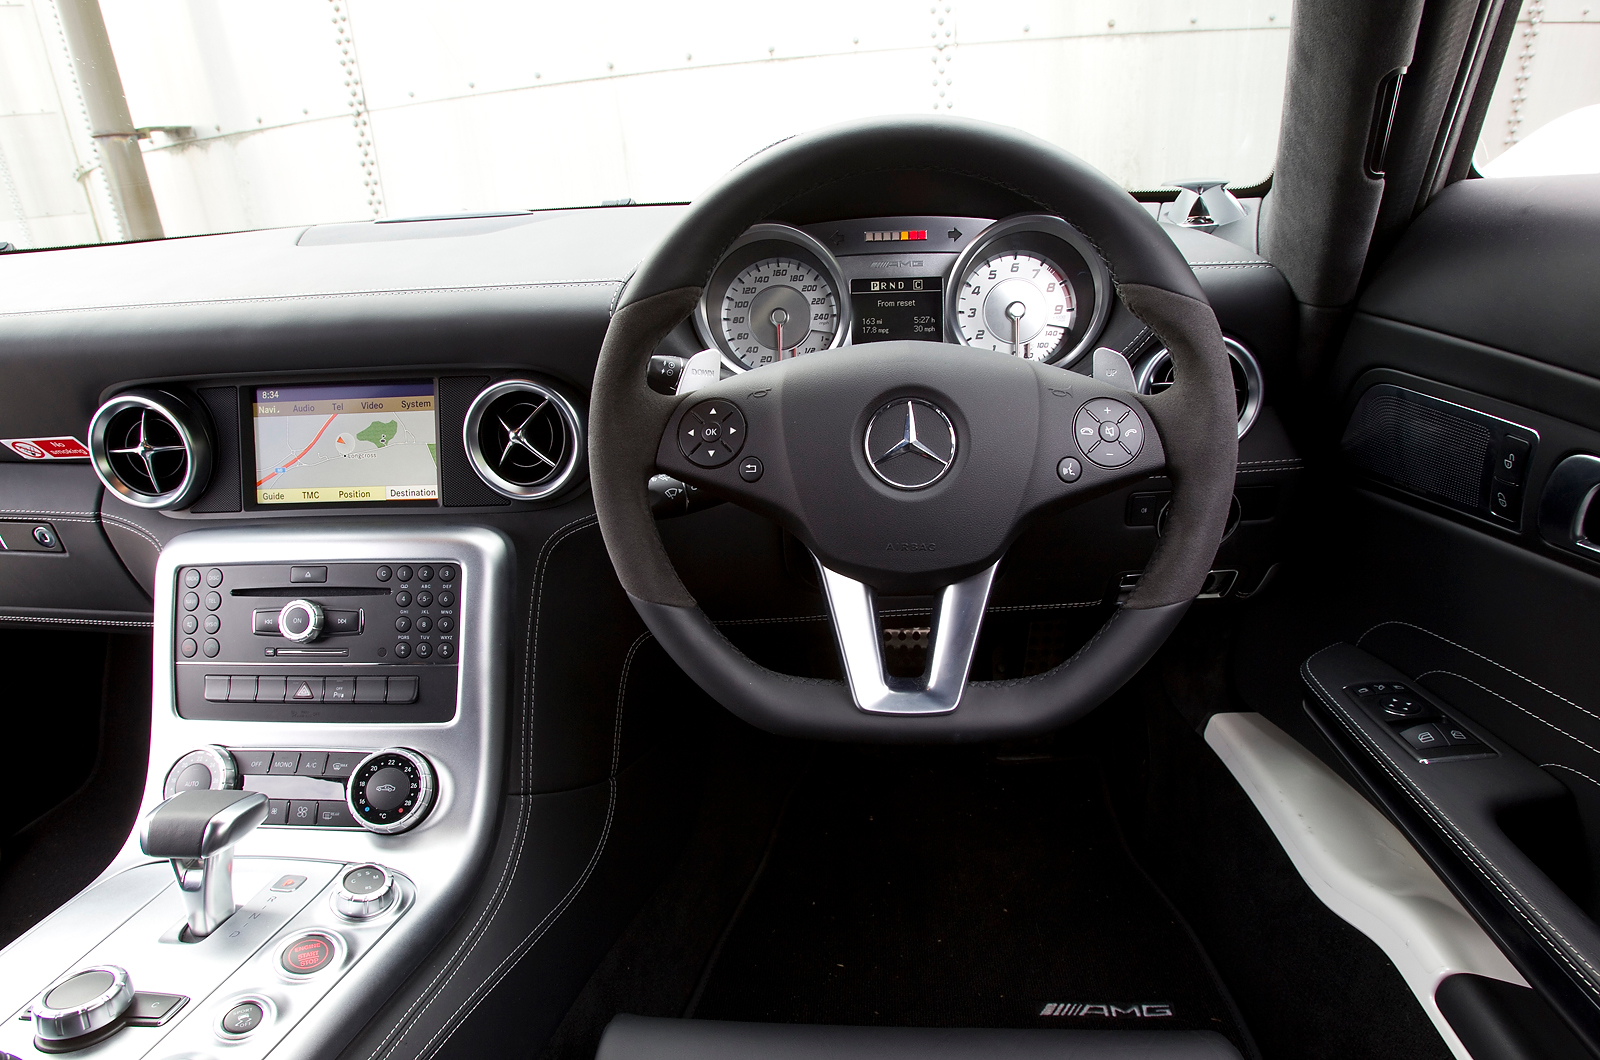 Mercedes-AMG SLS dashboard